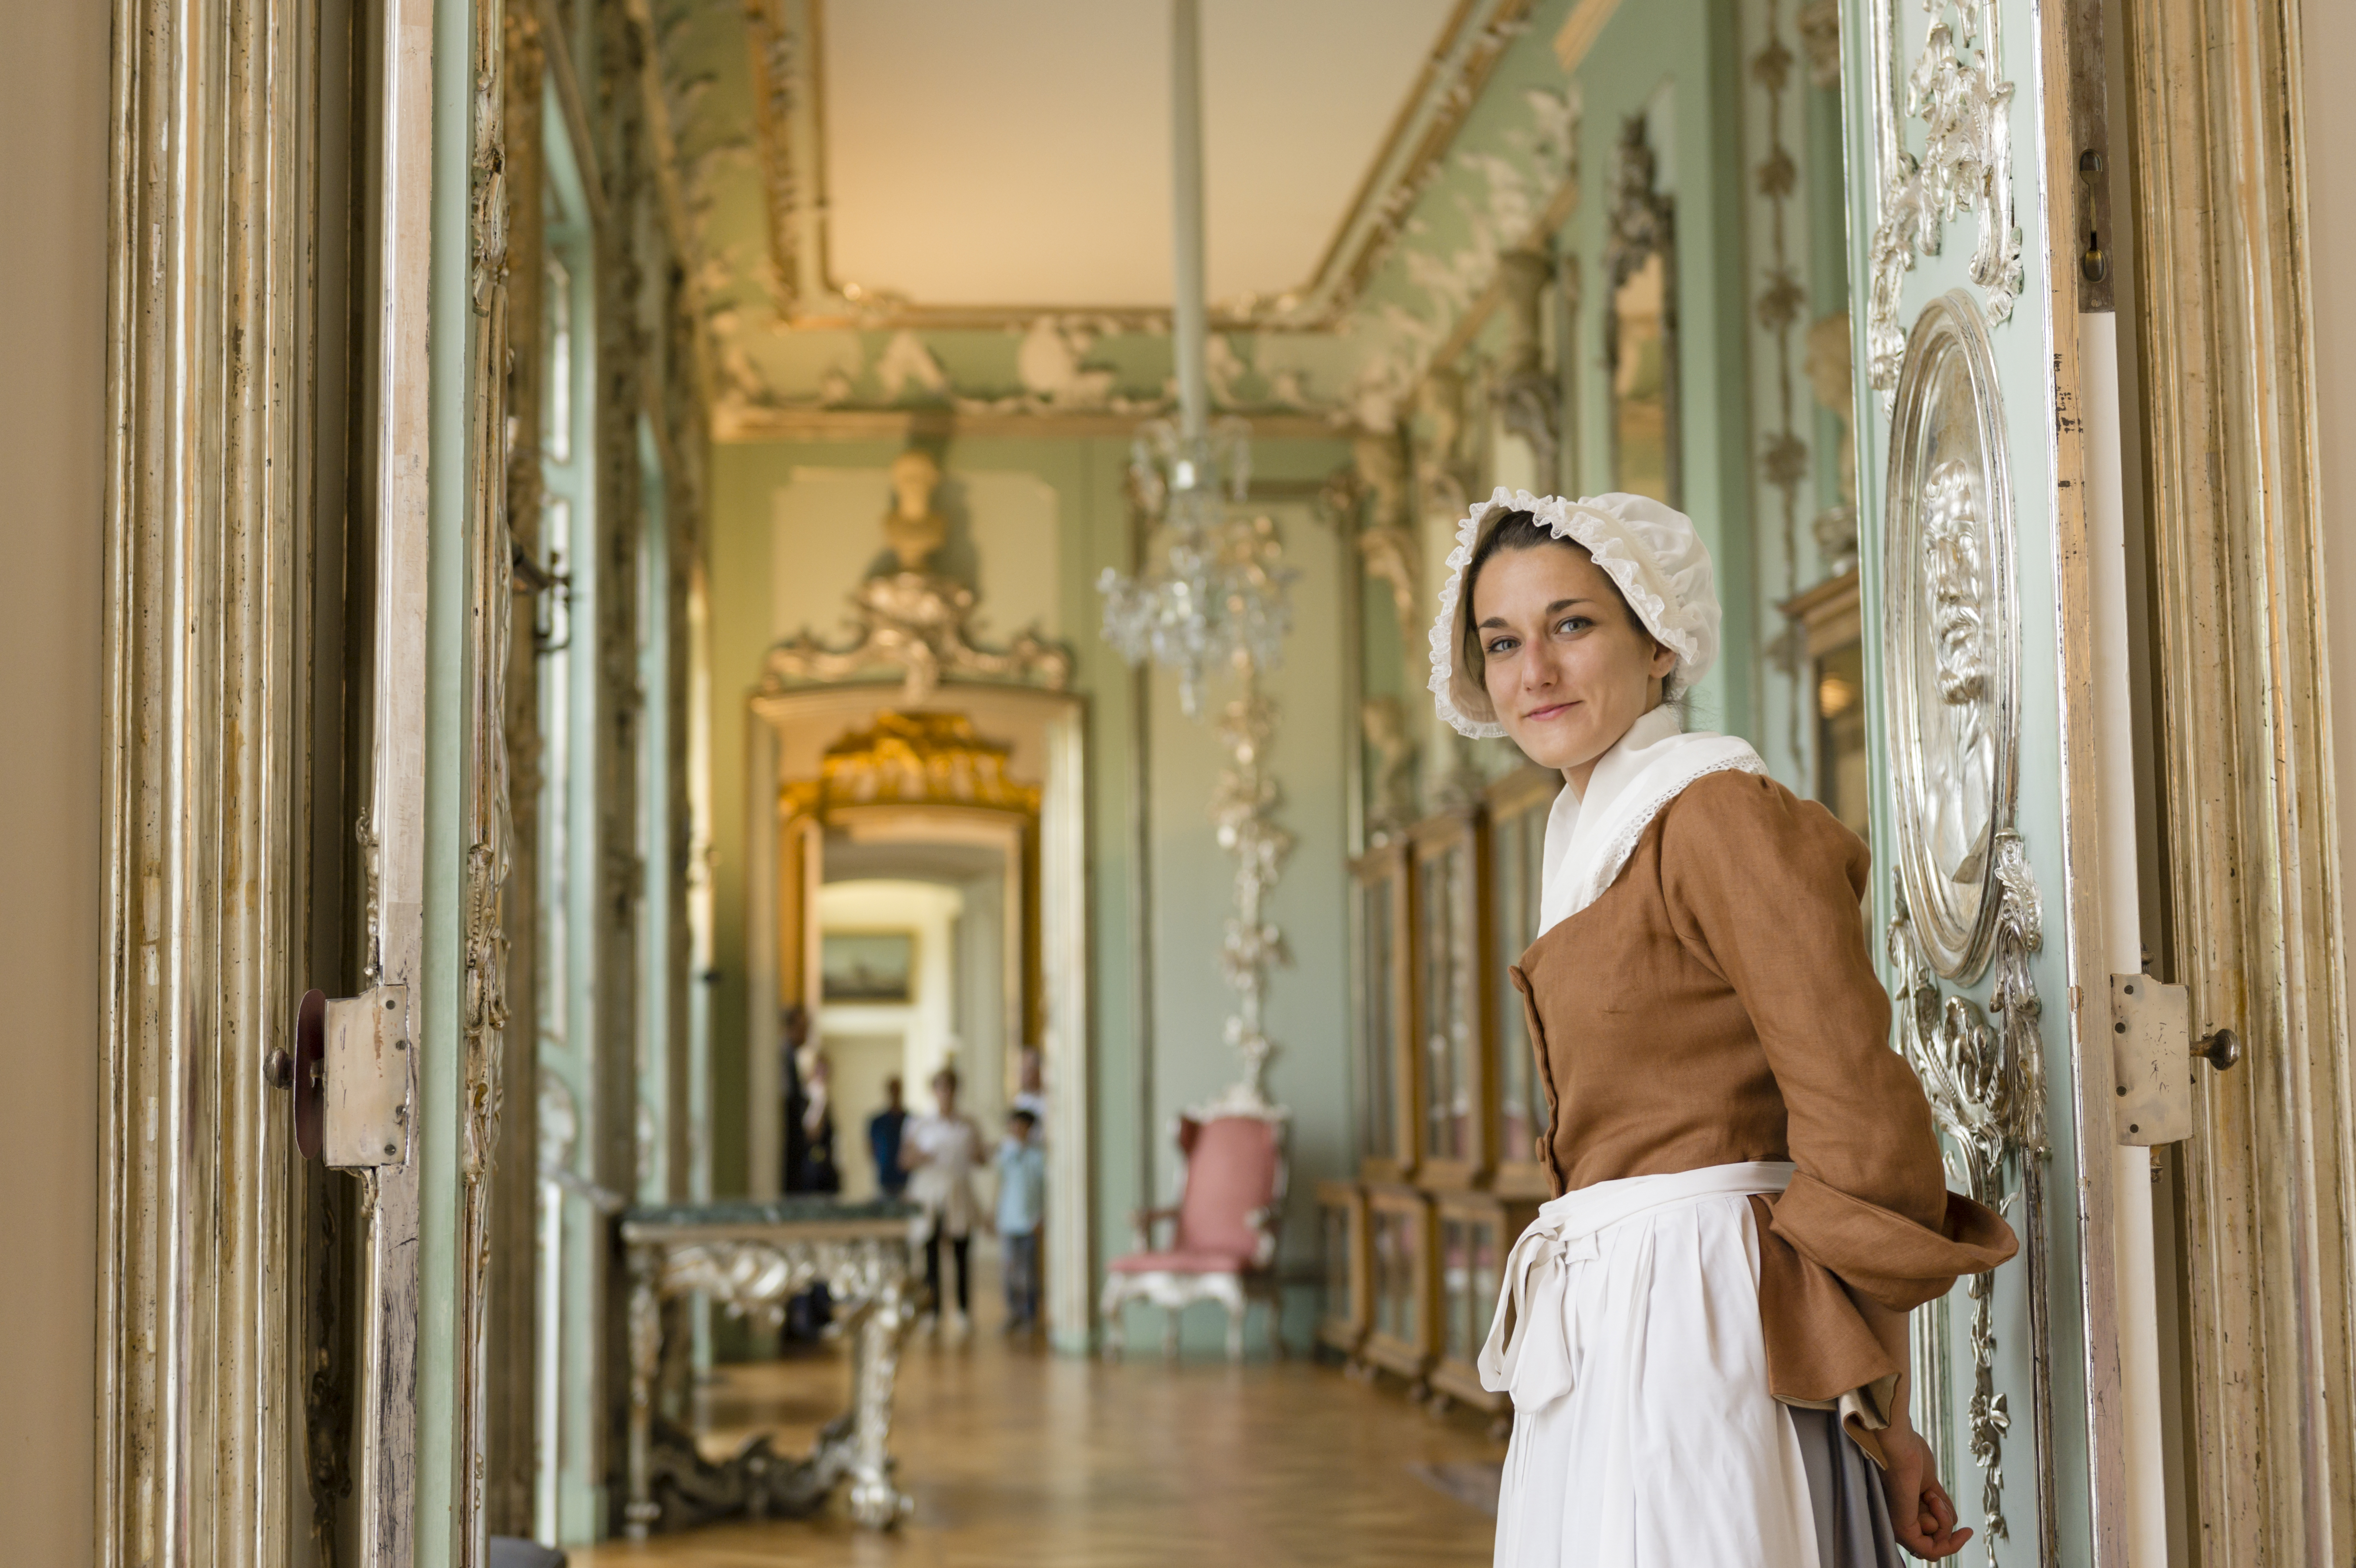 Eine als Kammerzofe verkleidete junge Frau steht an einer geöffneten Tür, hinter ihr ist Schlossraum zu sehen